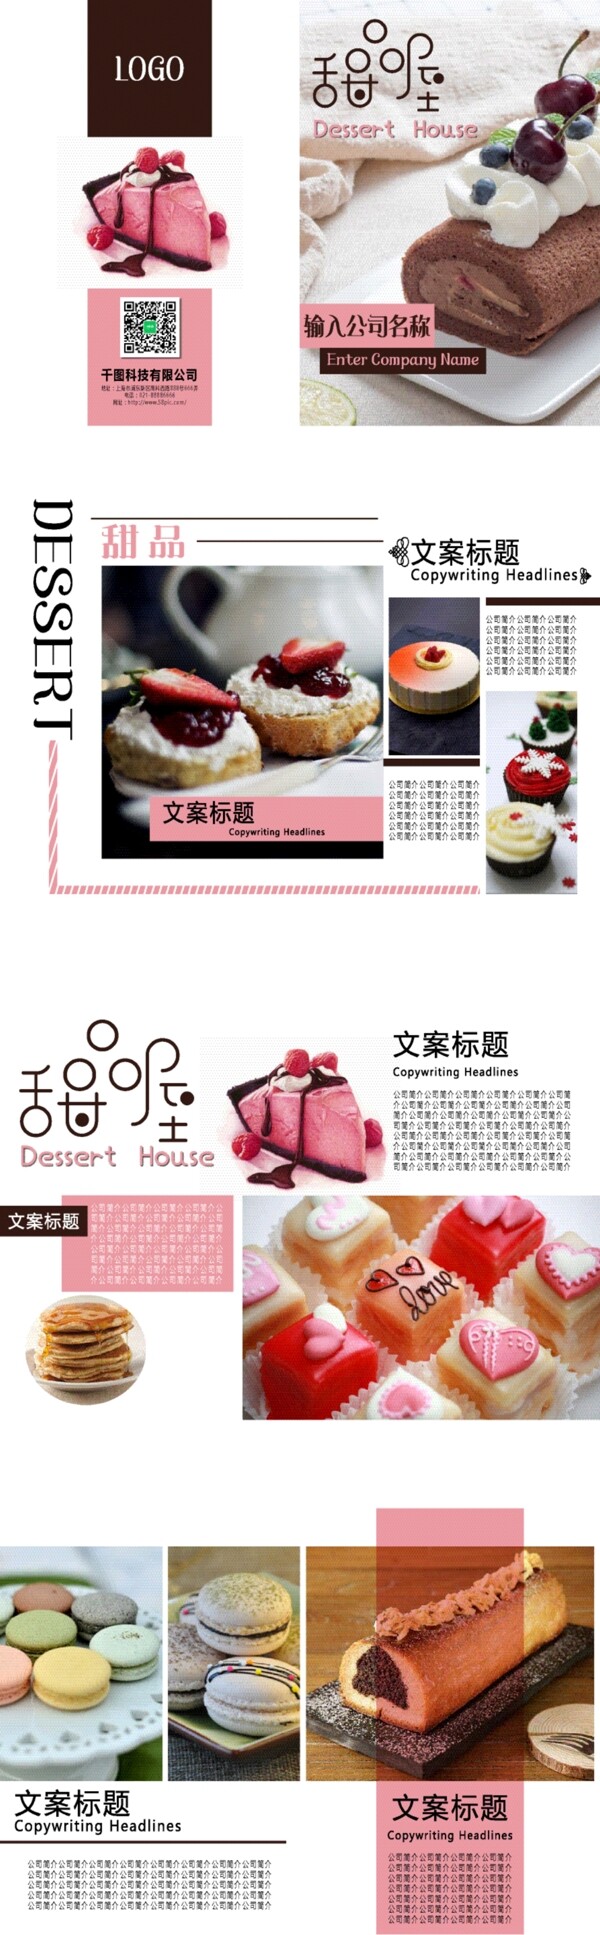 小清新粉色甜品宣传画册